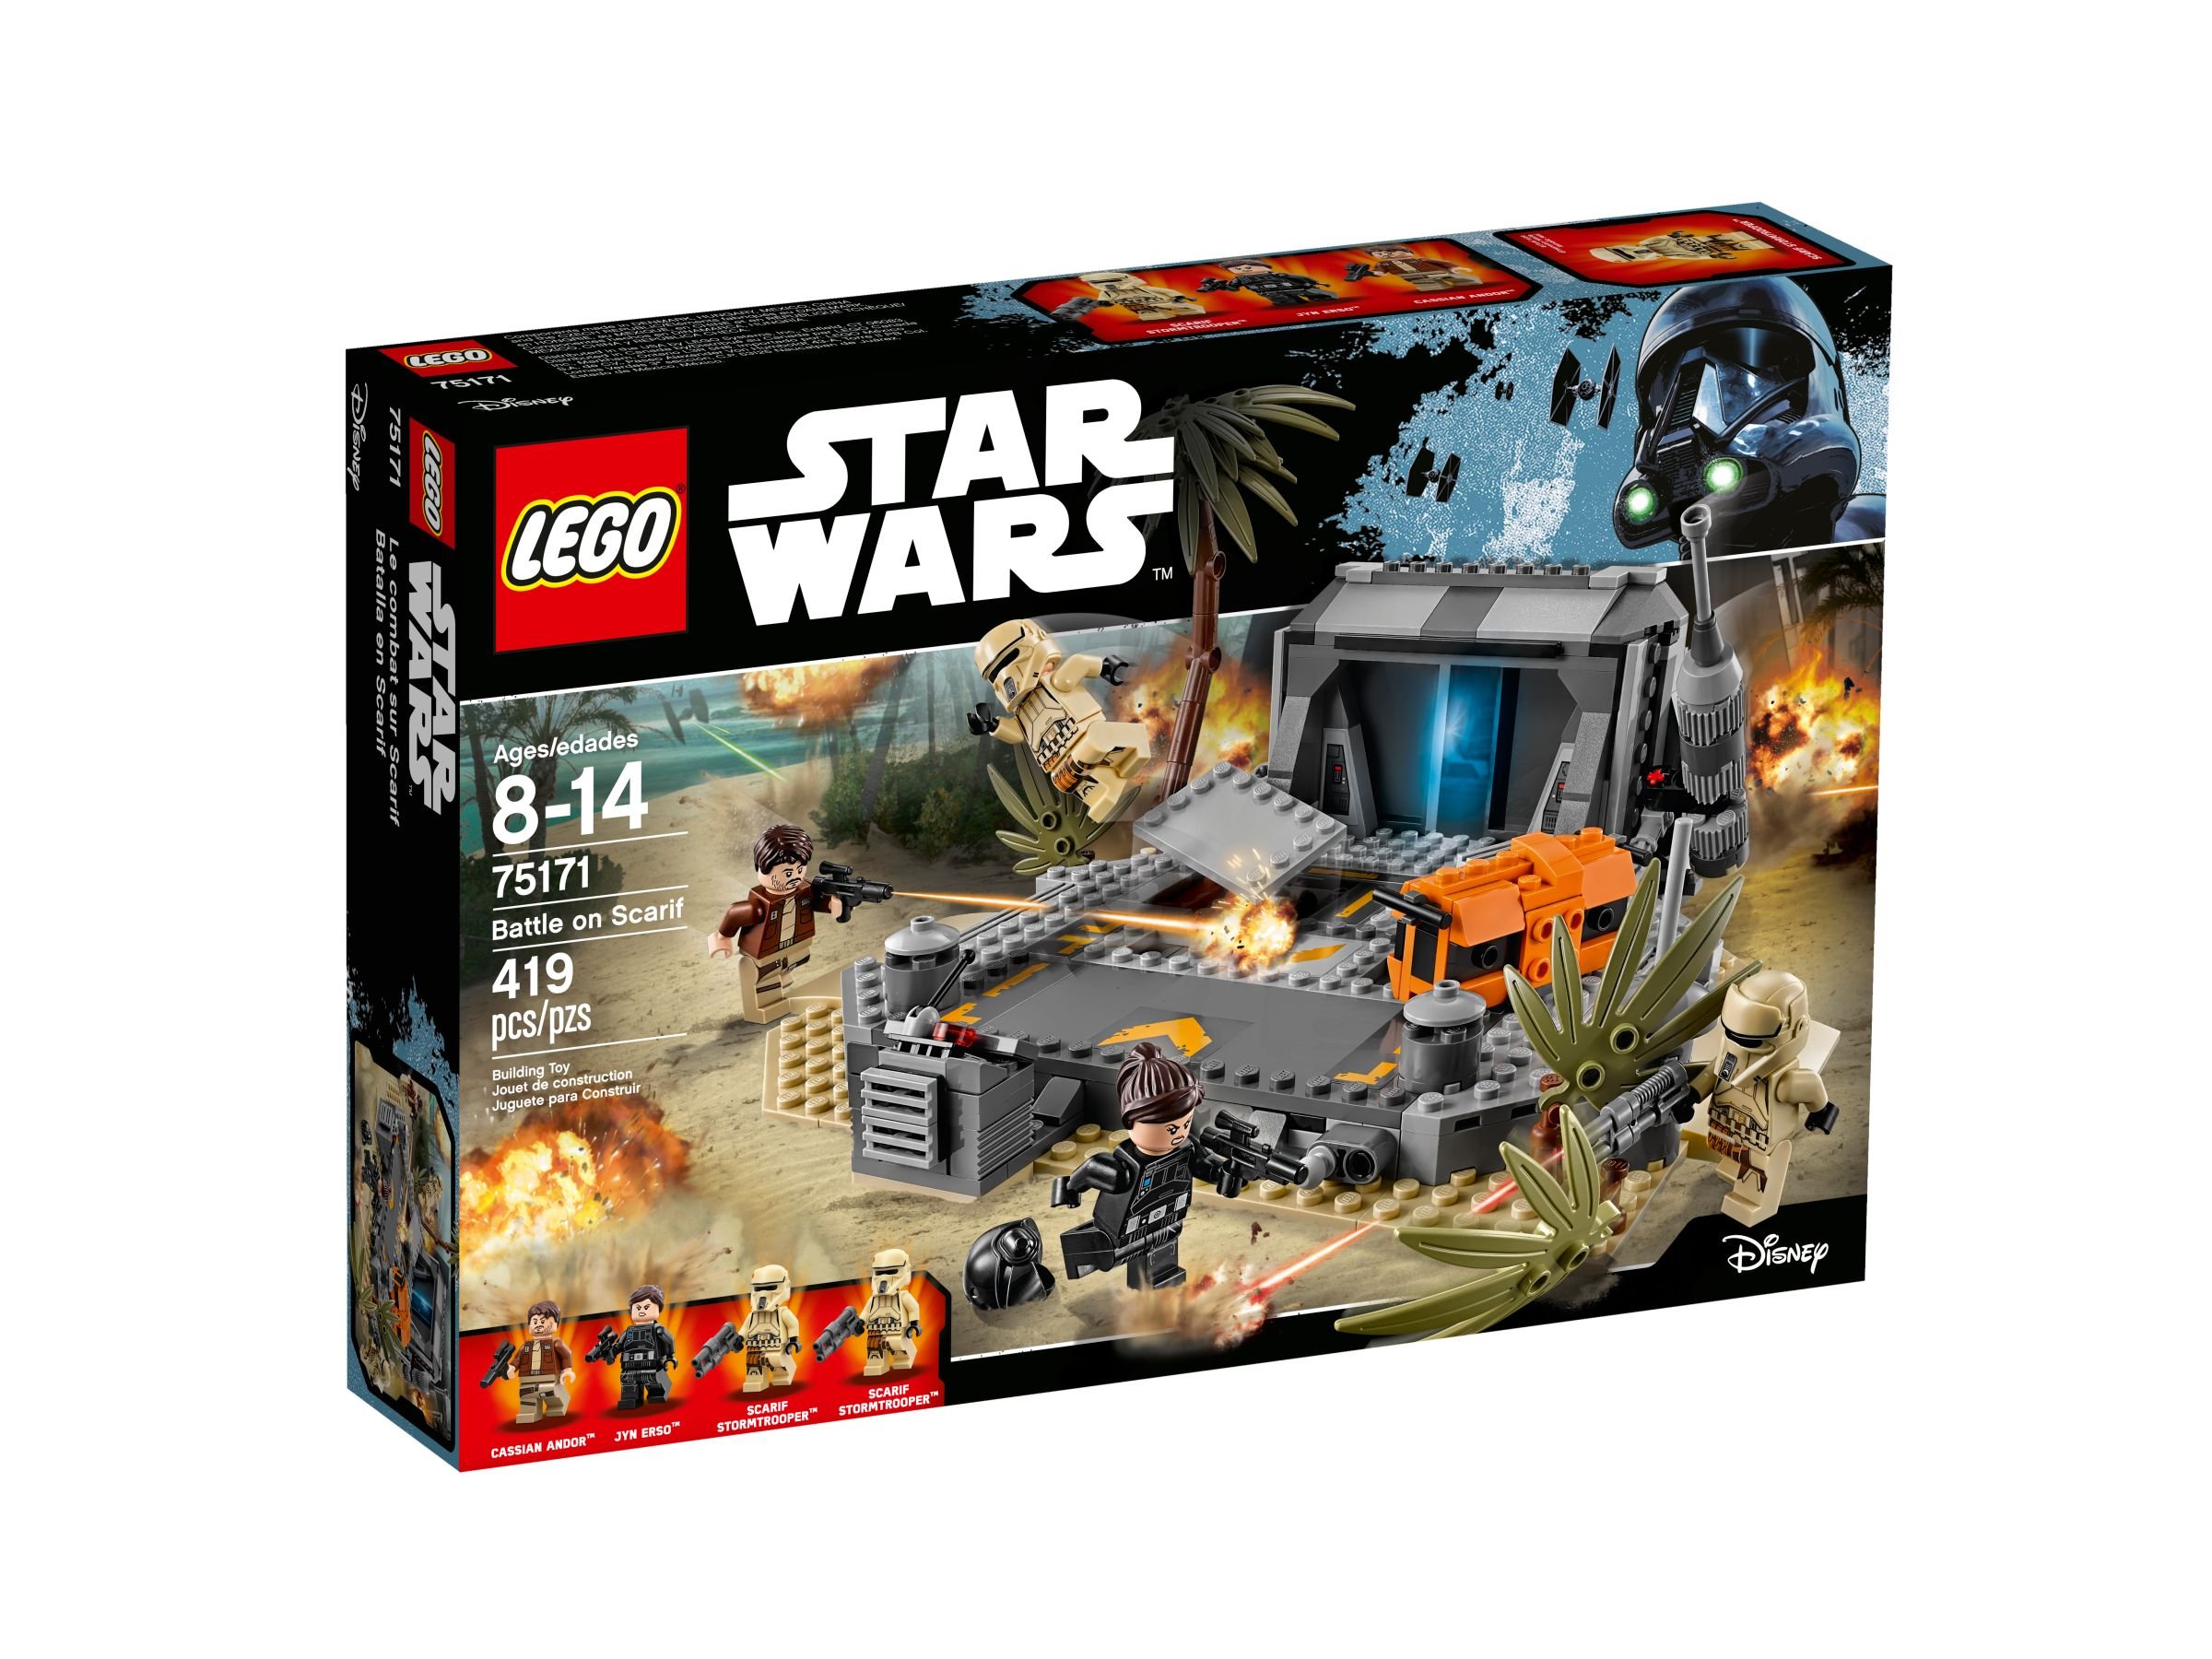 LEGO Star Wars 75171 Battle on Scarif LEGO_75171_alt1.jpg